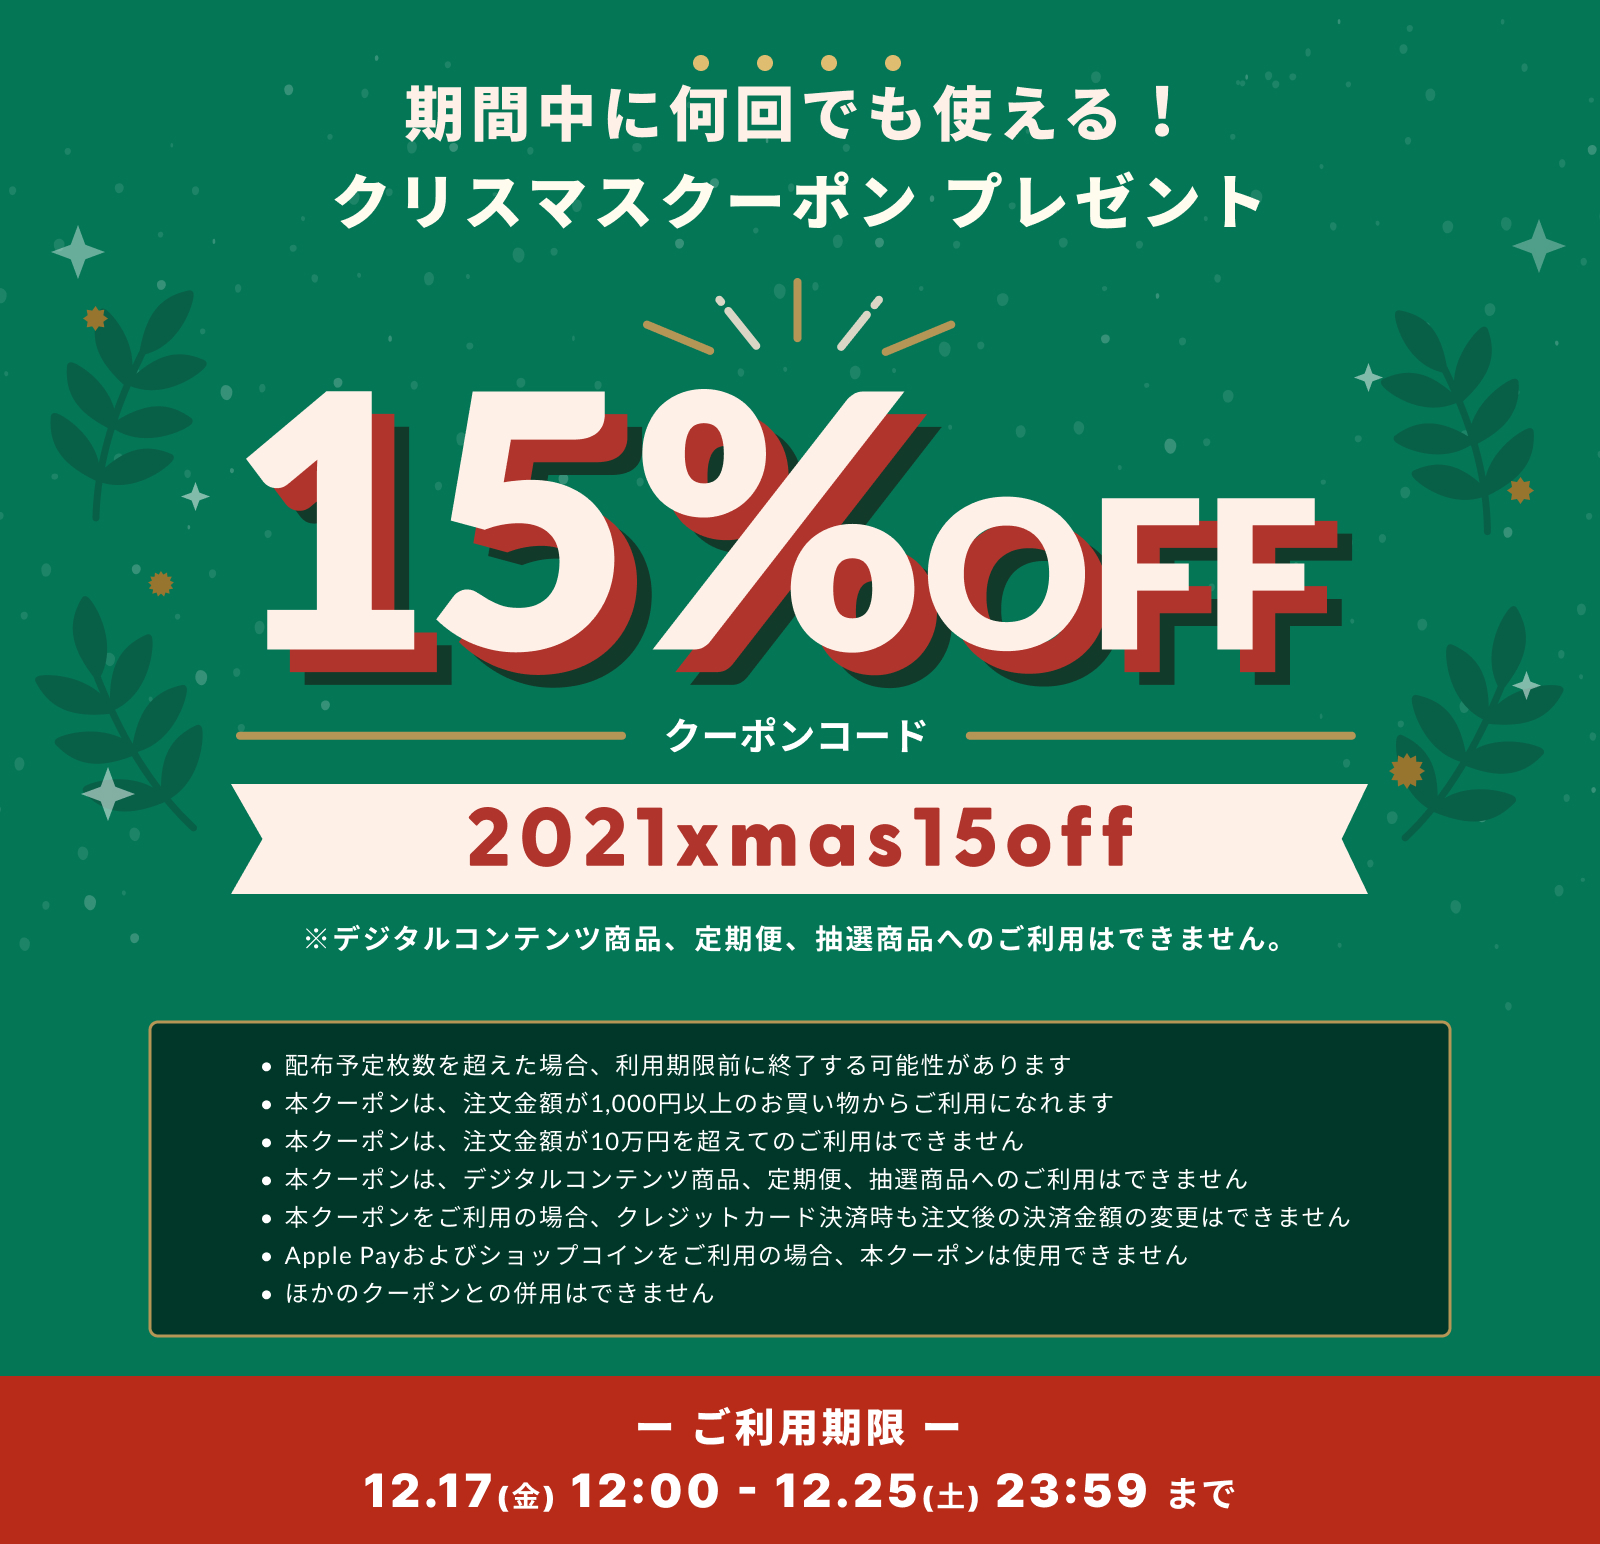 【全品15%OFF】クリスマスクーポンキャンペーン